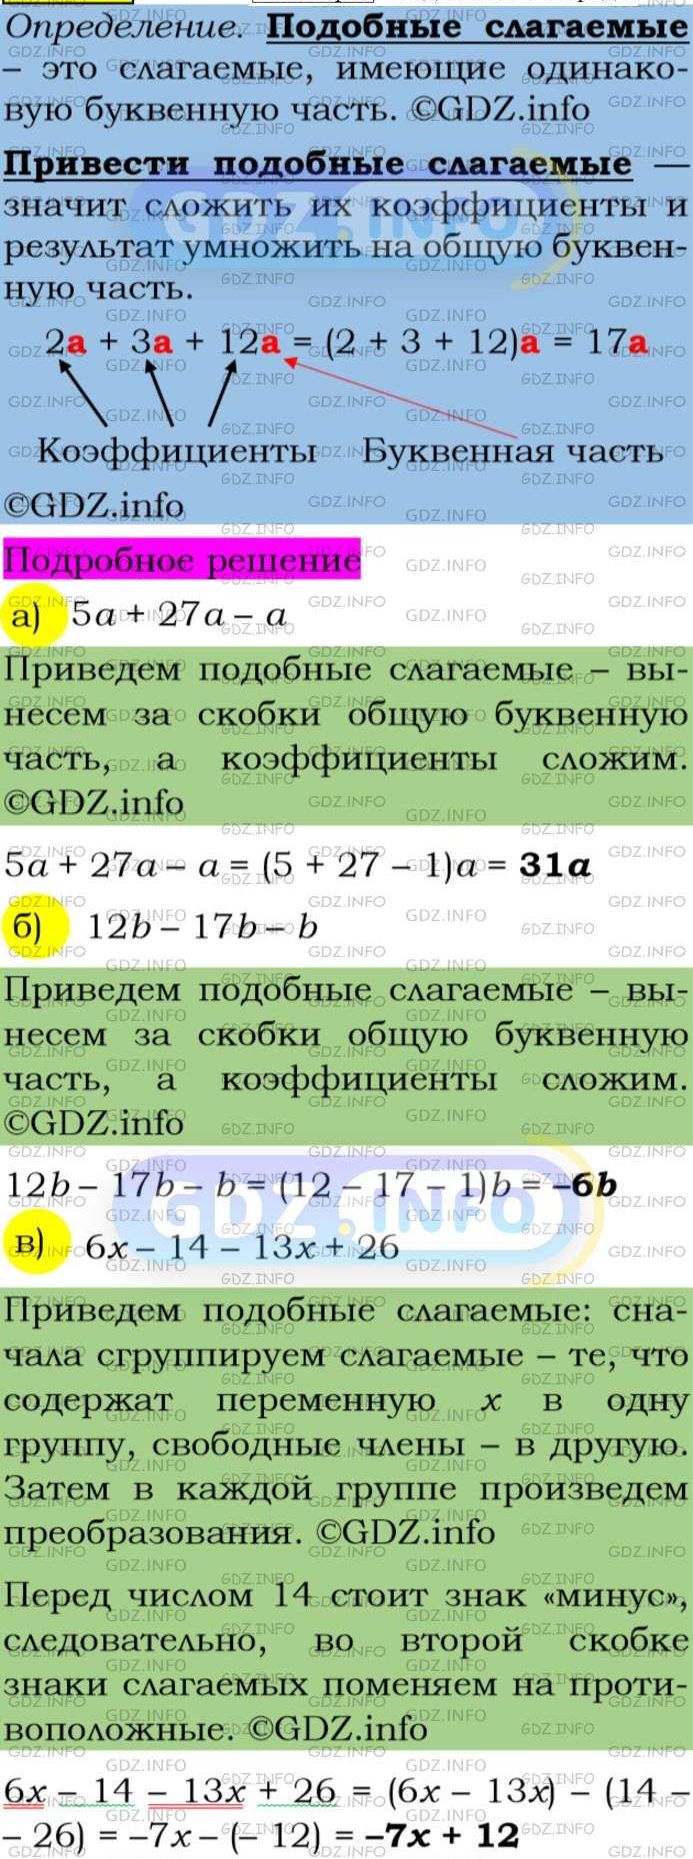 Фото подробного решения: Номер задания №114 из ГДЗ по Алгебре 7 класс: Макарычев Ю.Н.